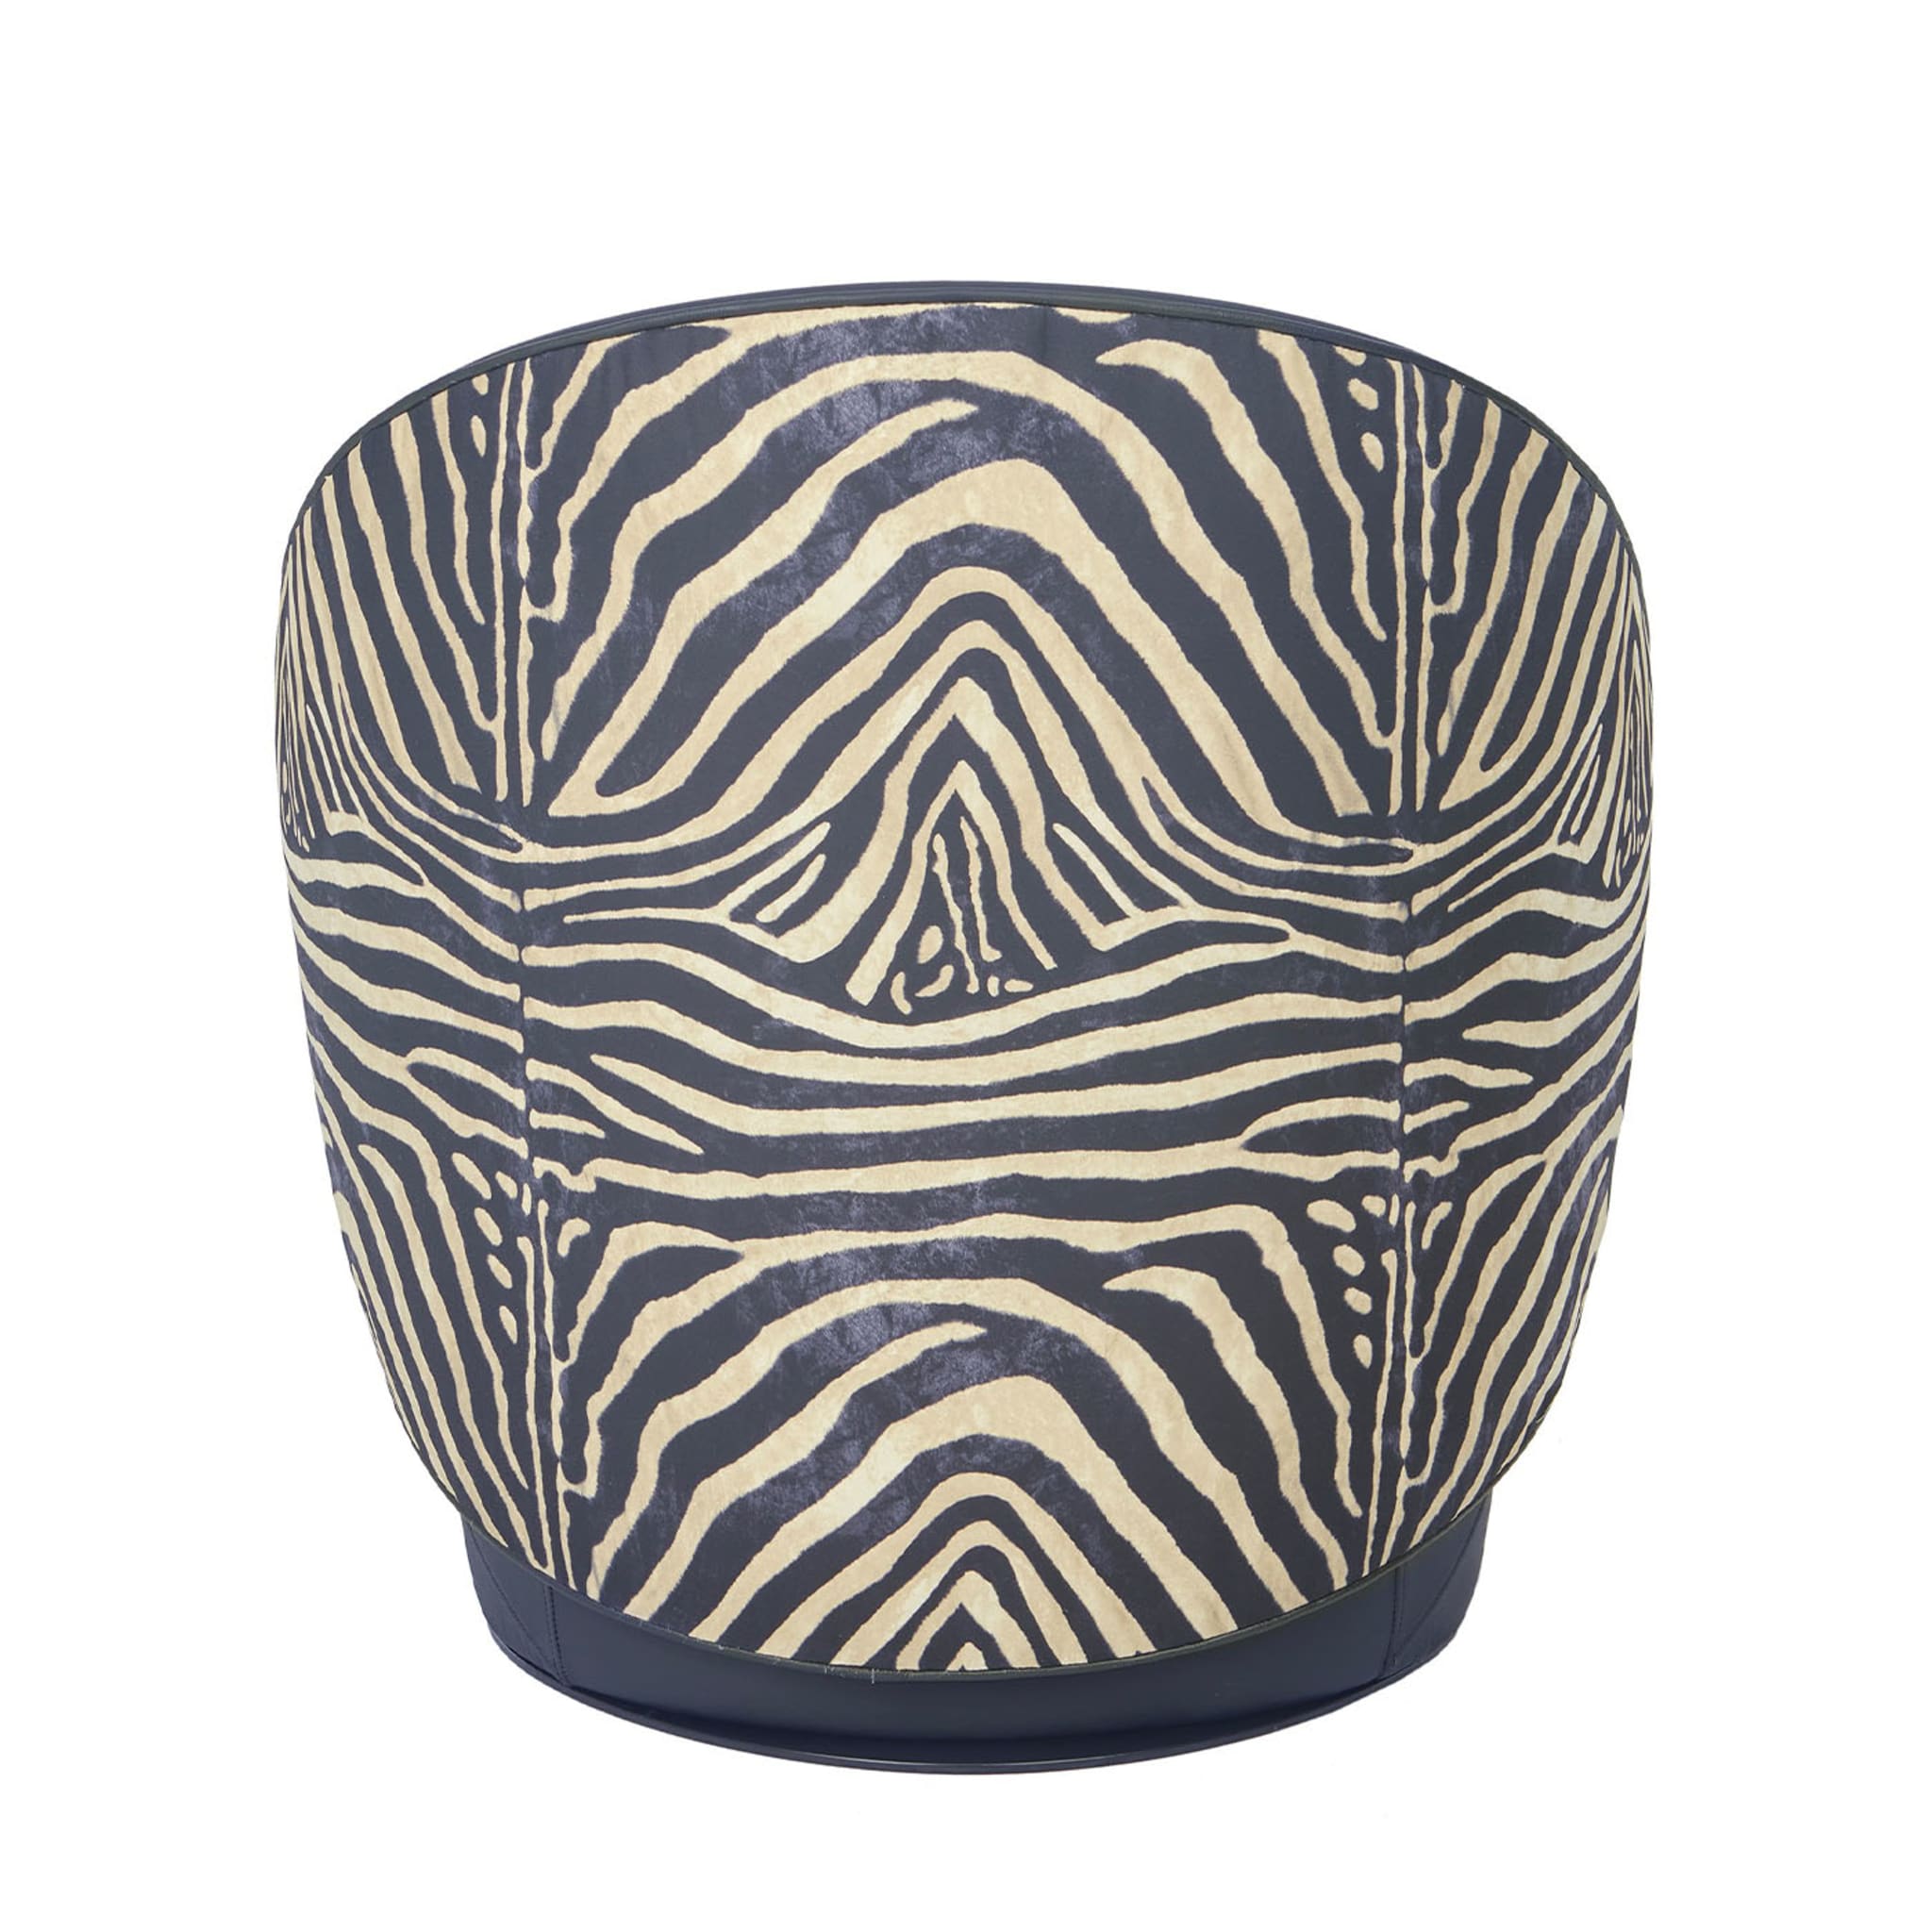 Kiros Ohr Zebra-Striped Swivel Armchair - Alternative view 3